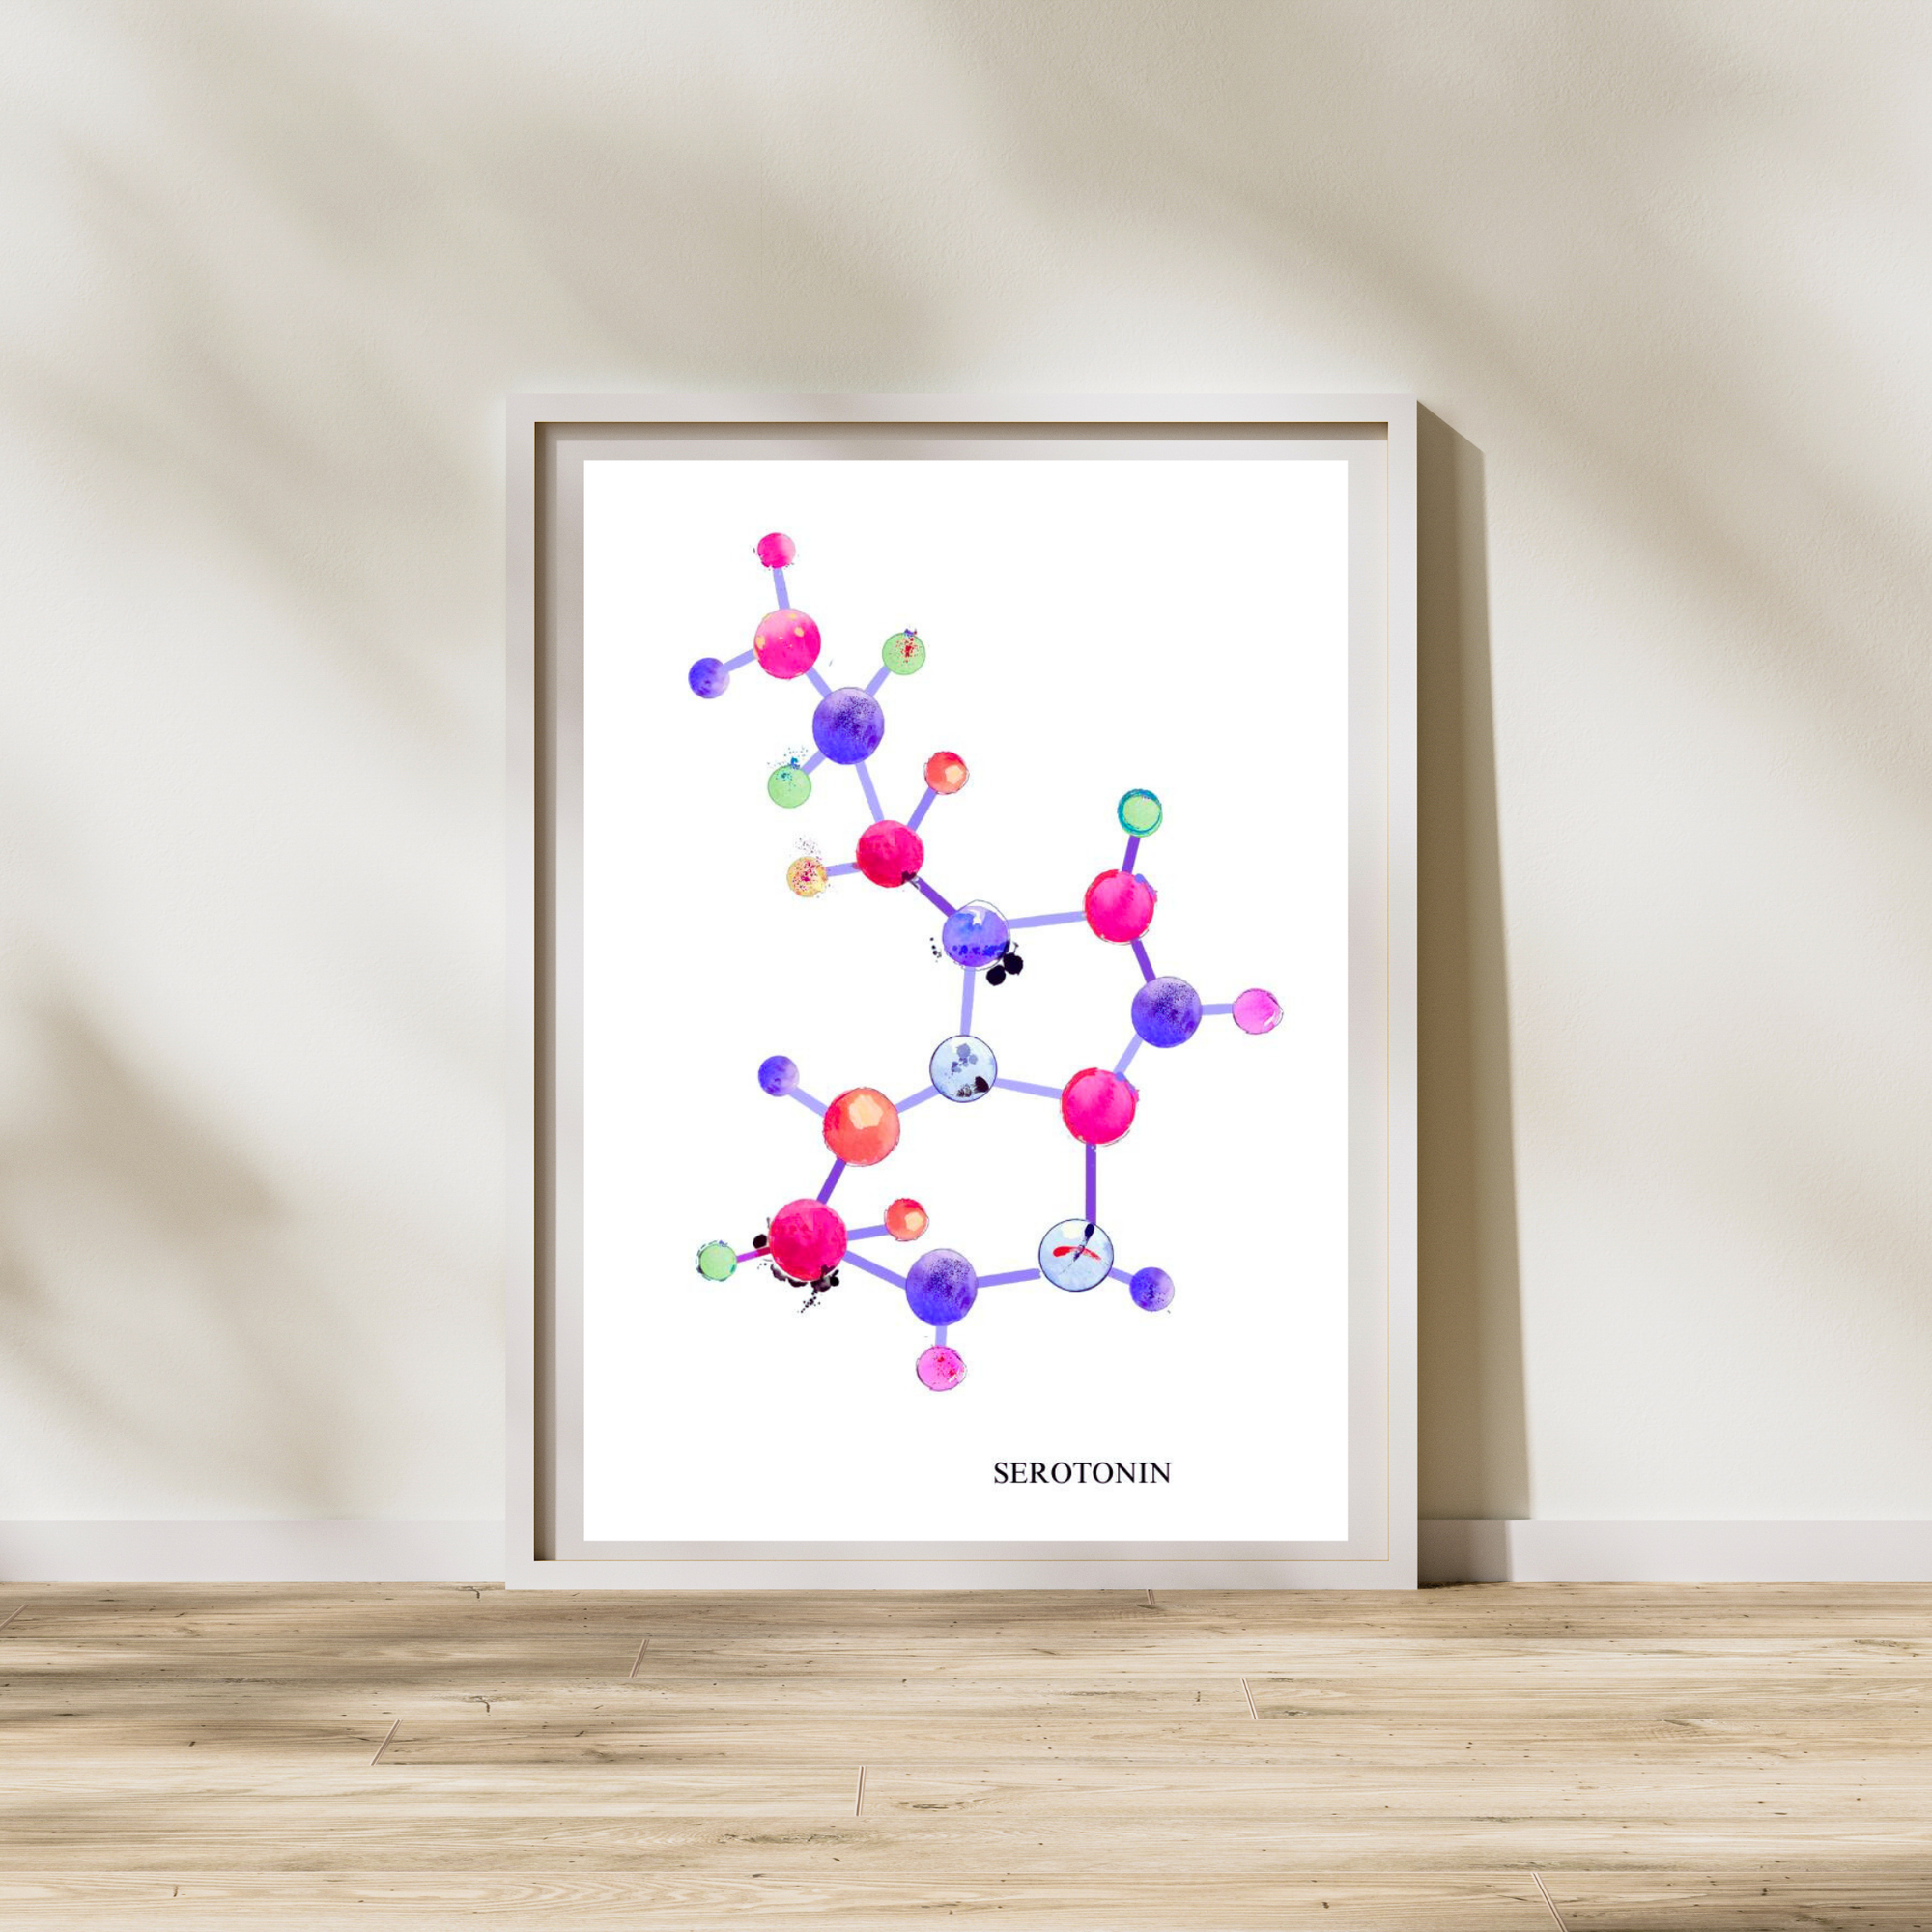 Serotonin Art Print, Biochemistry Art, Psychiatry Artwork, Psychologist Gift